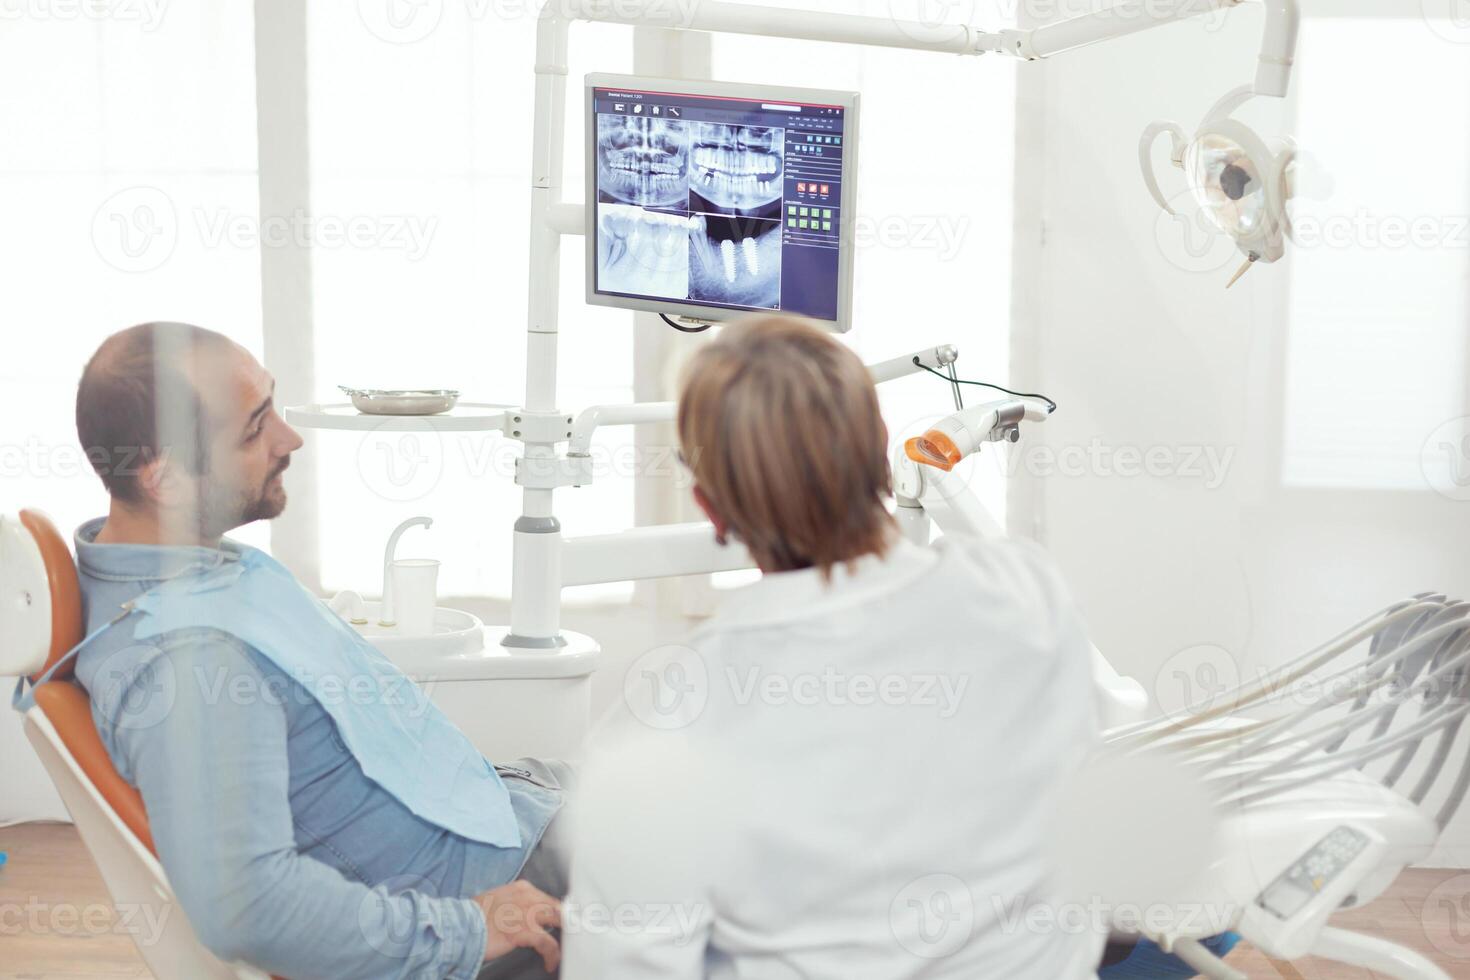 tandläkare läkare och patient ser på digital teeh röntgen i stomatologi sjukhus kontor. sjuk patient Sammanträde på dental stol framställning för tandvård kirurgi under somatologi utnämning foto